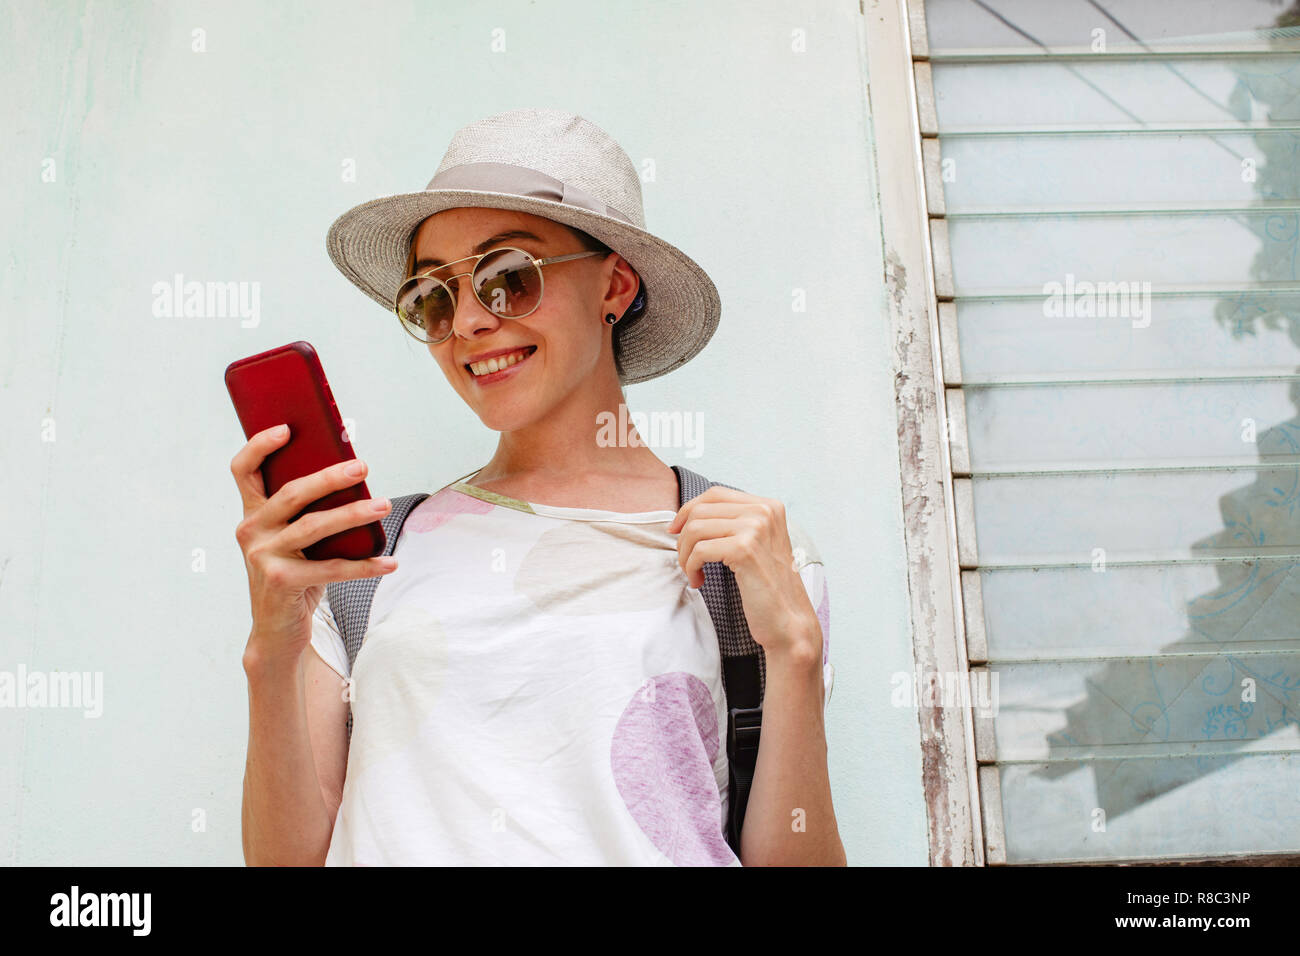 Stylish female using smartphone near shabby building Stock Photo